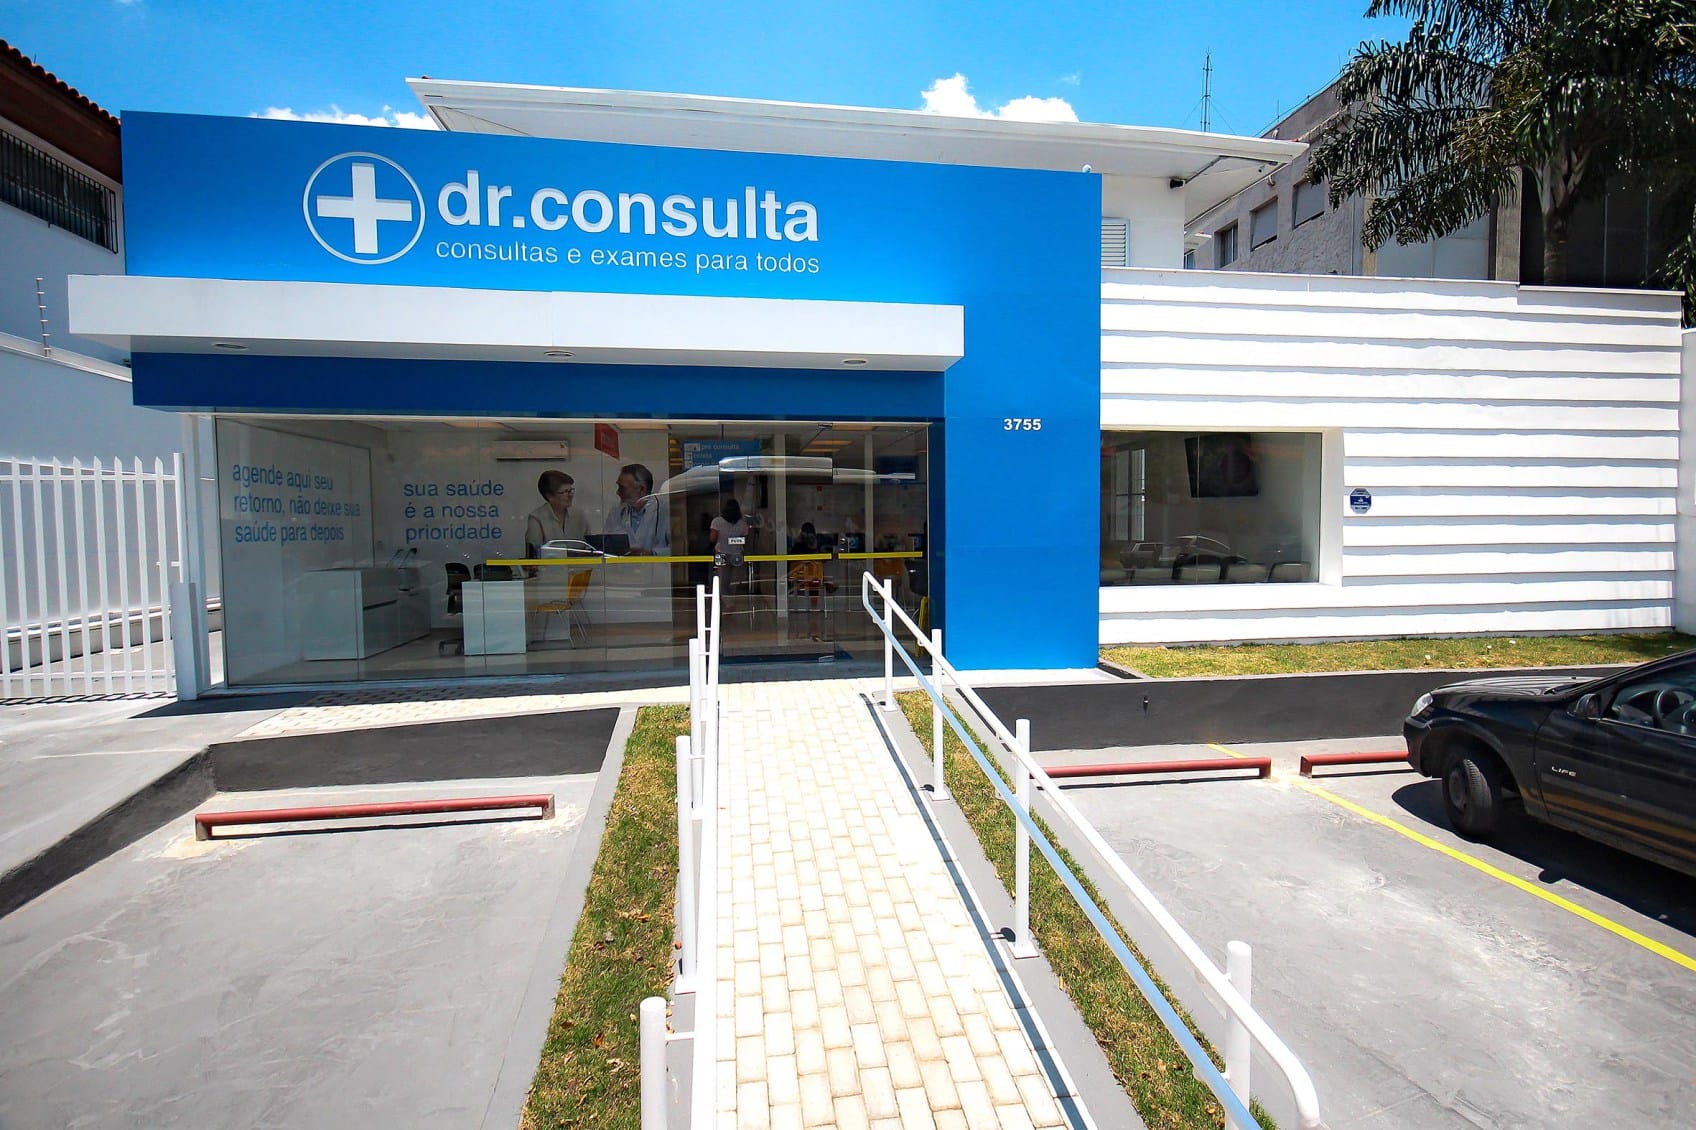 dr.consulta